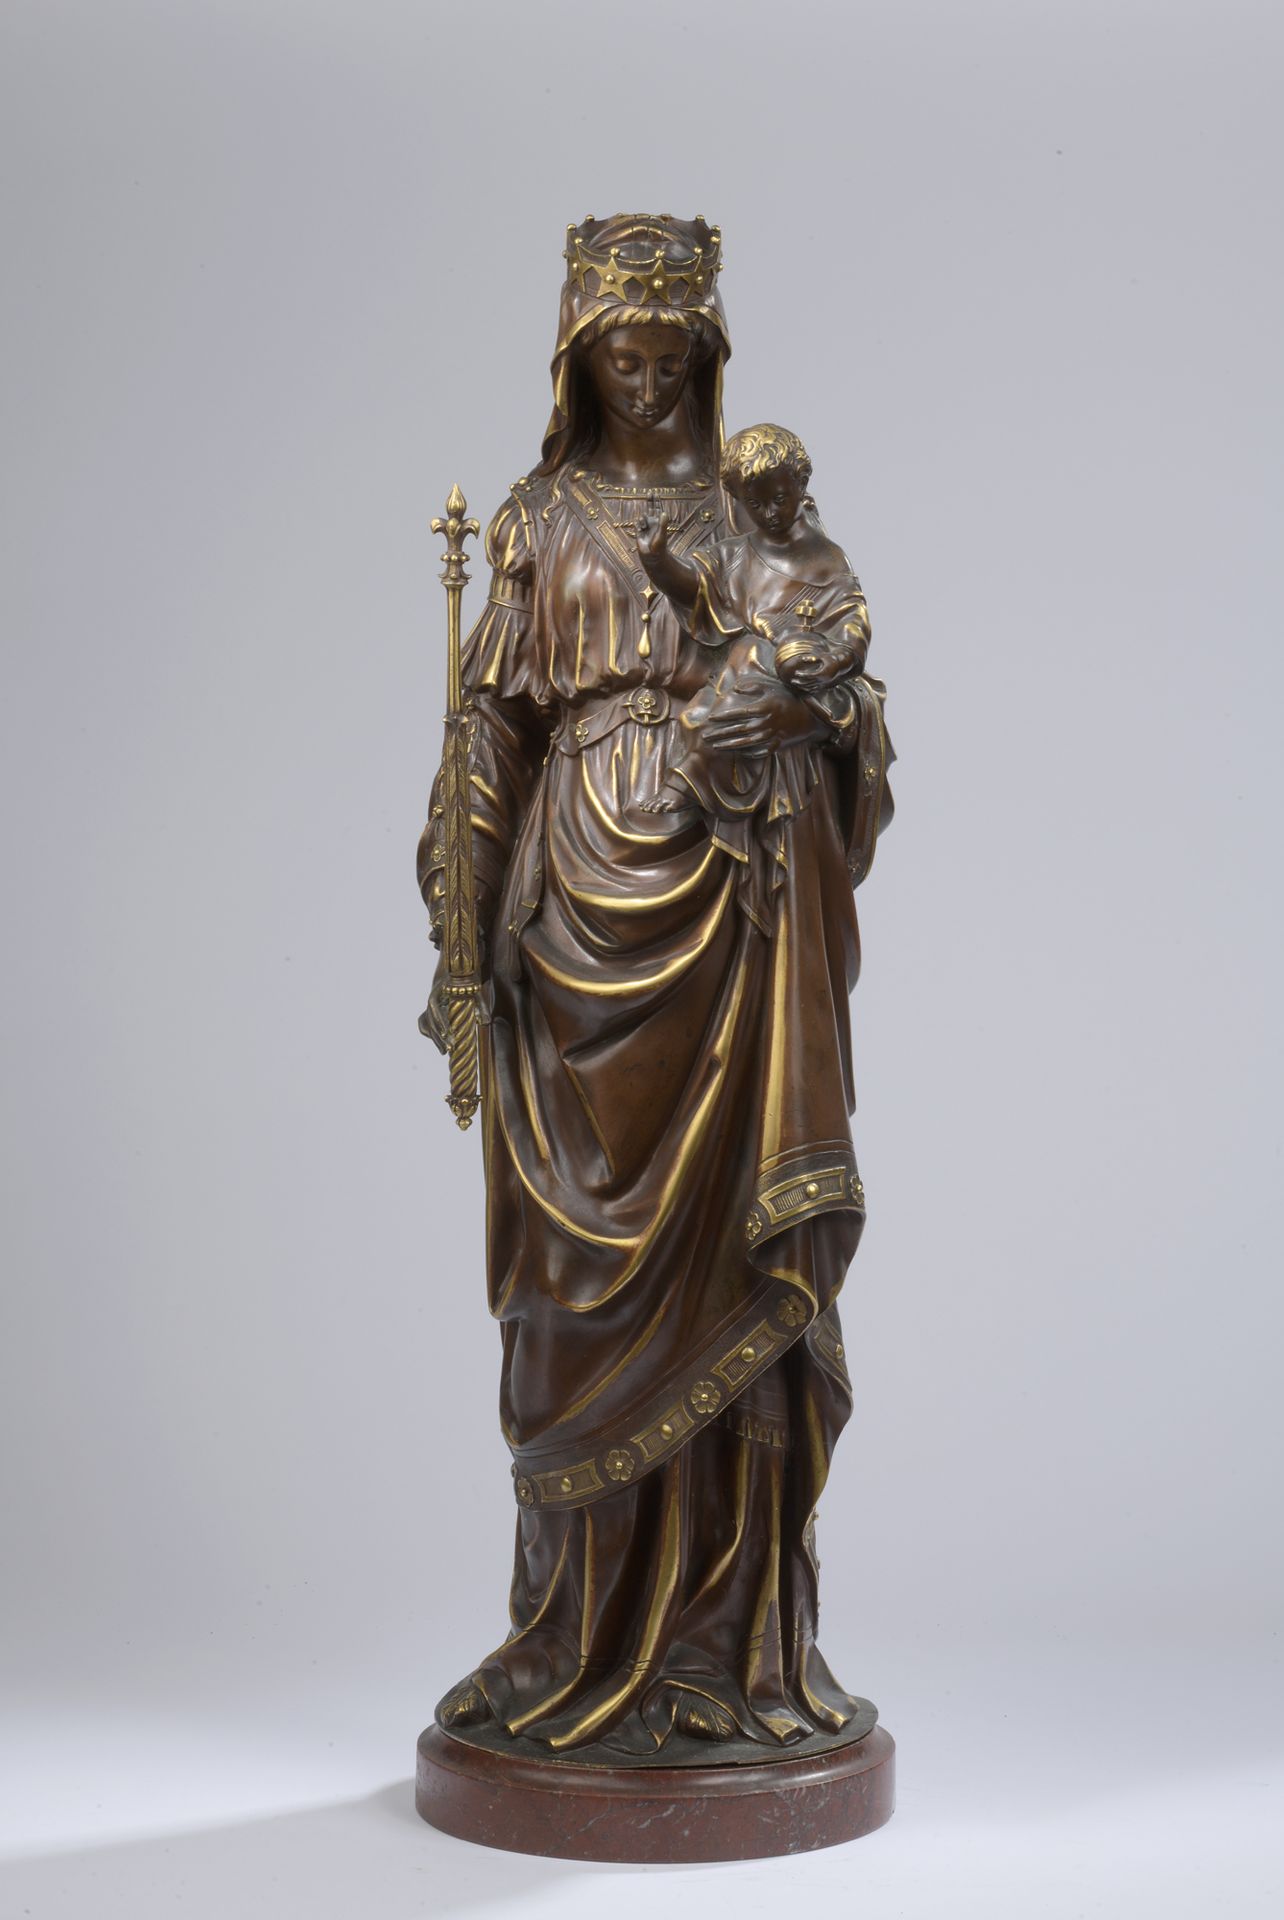 Null 19 世纪法国新哥特式风格作品
圣母和圣婴
青铜质地，带有棕色和镀金双层铜锈，非常有趣。
H.61 厘米（不包括底座）
包括一个红色大理石底座。